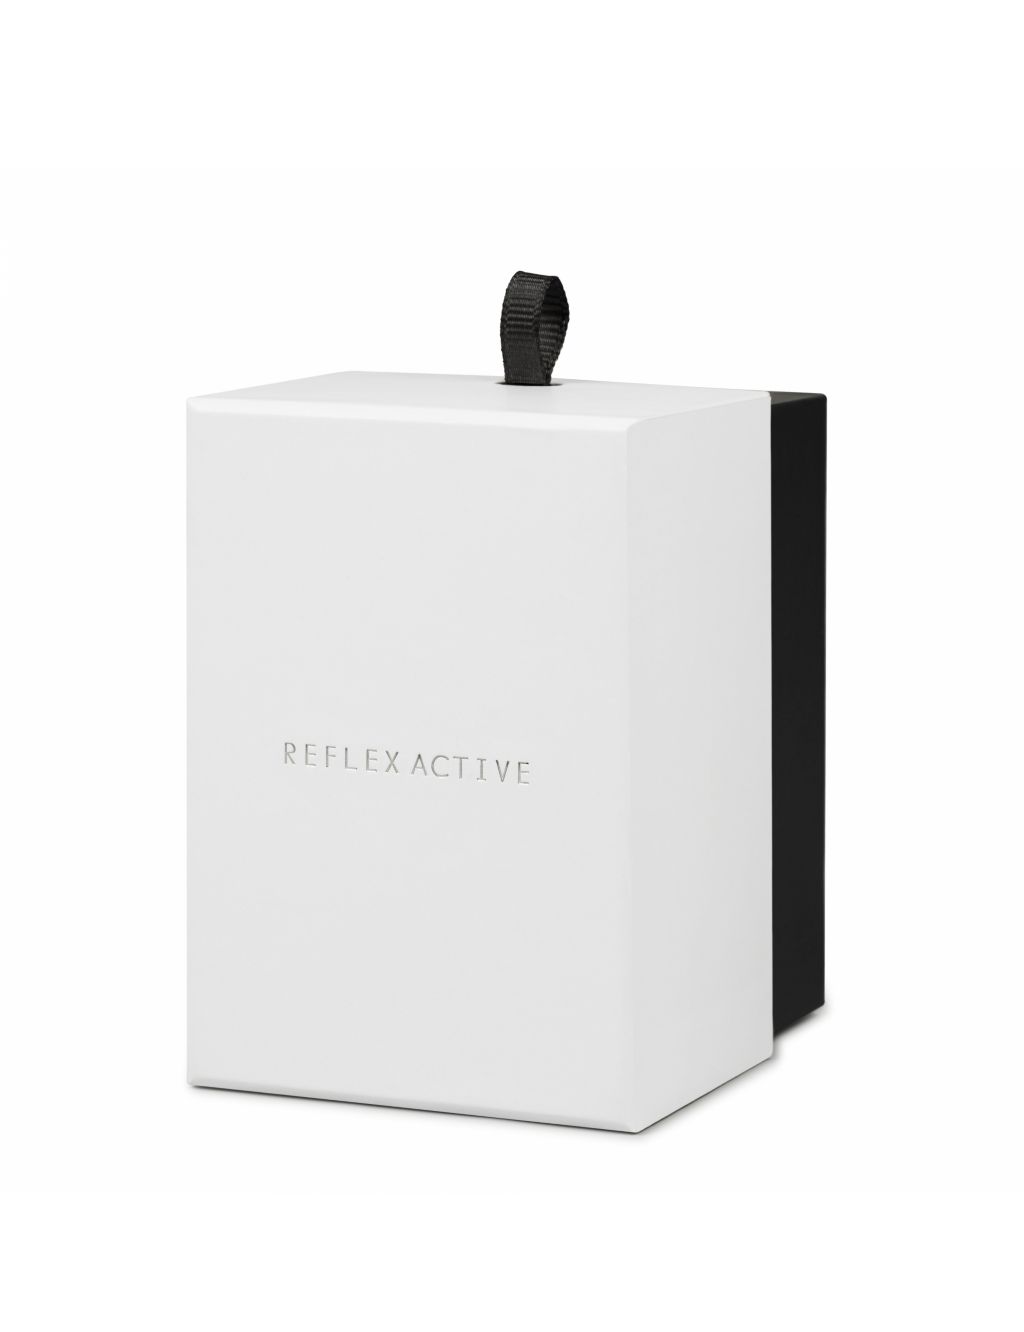 Reflex Active Black Smartwatch 5 of 5